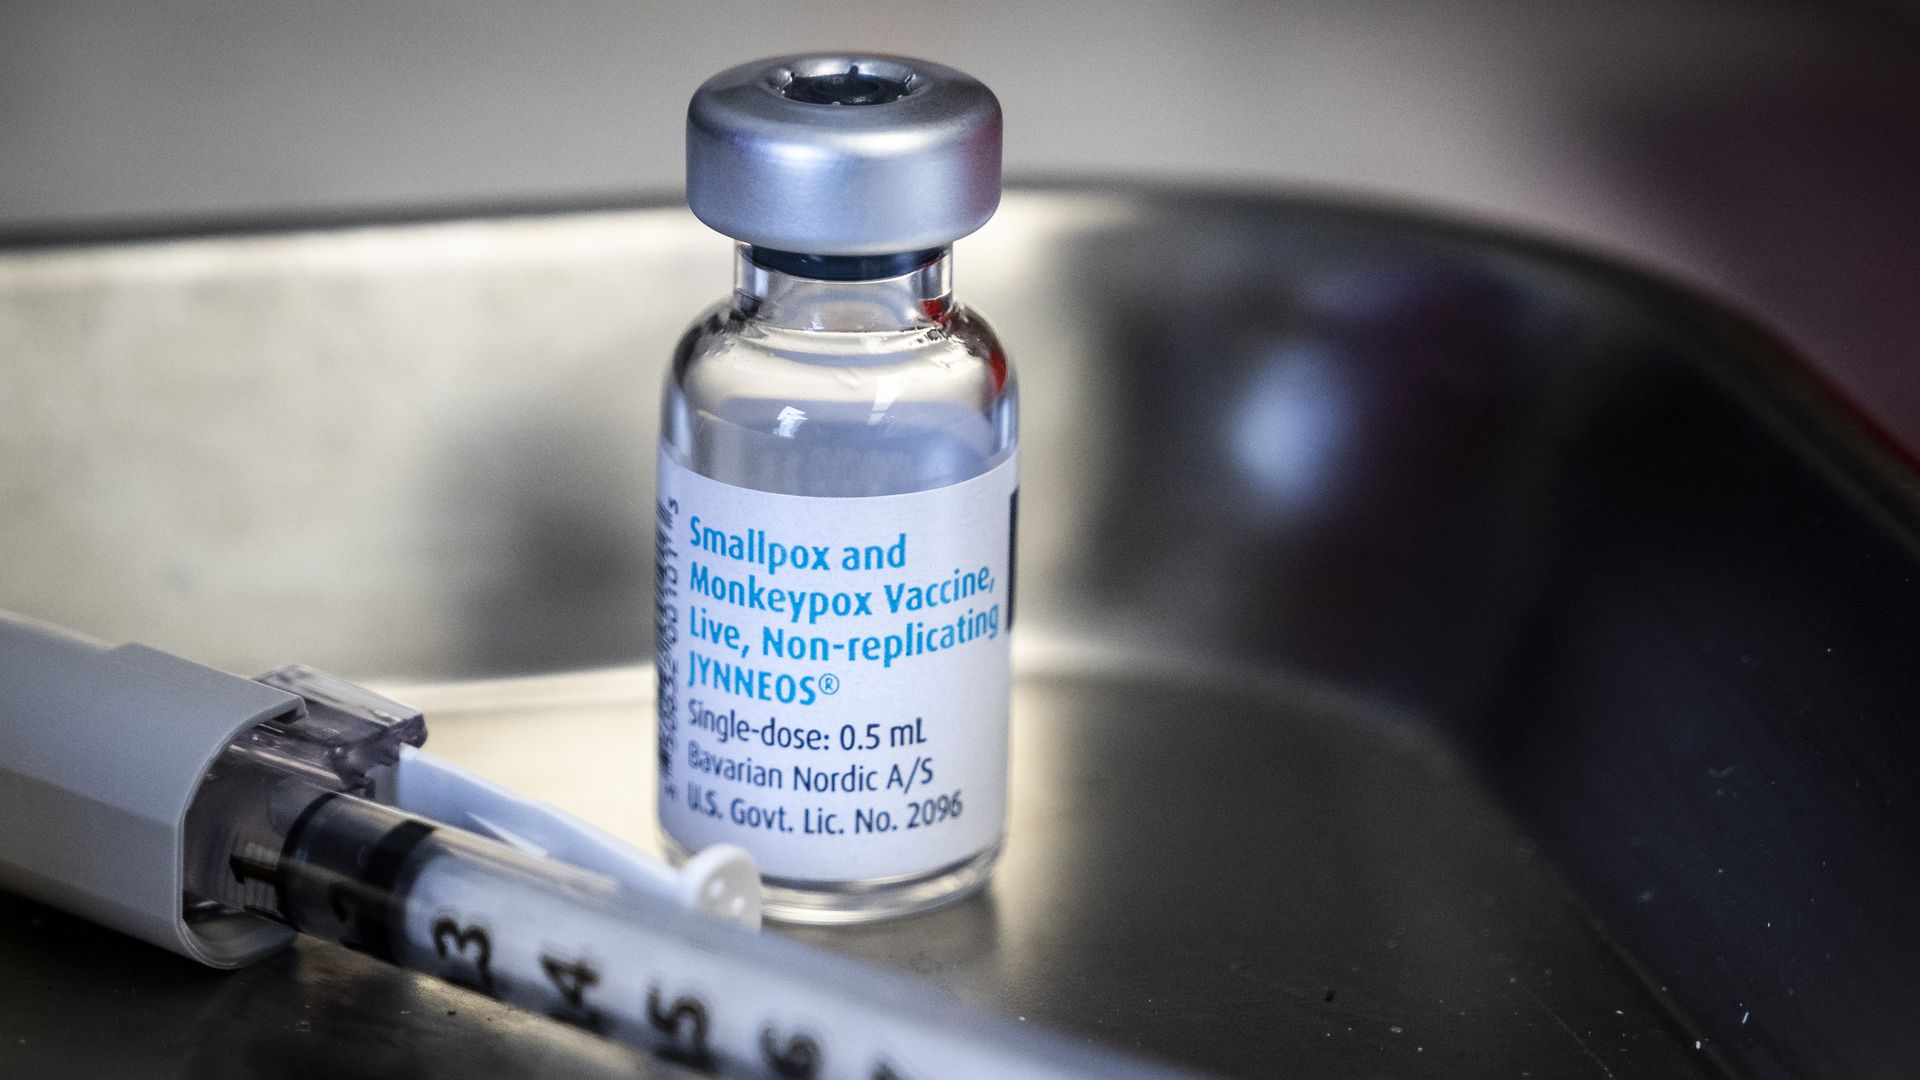 Monkeypox vaccine vial